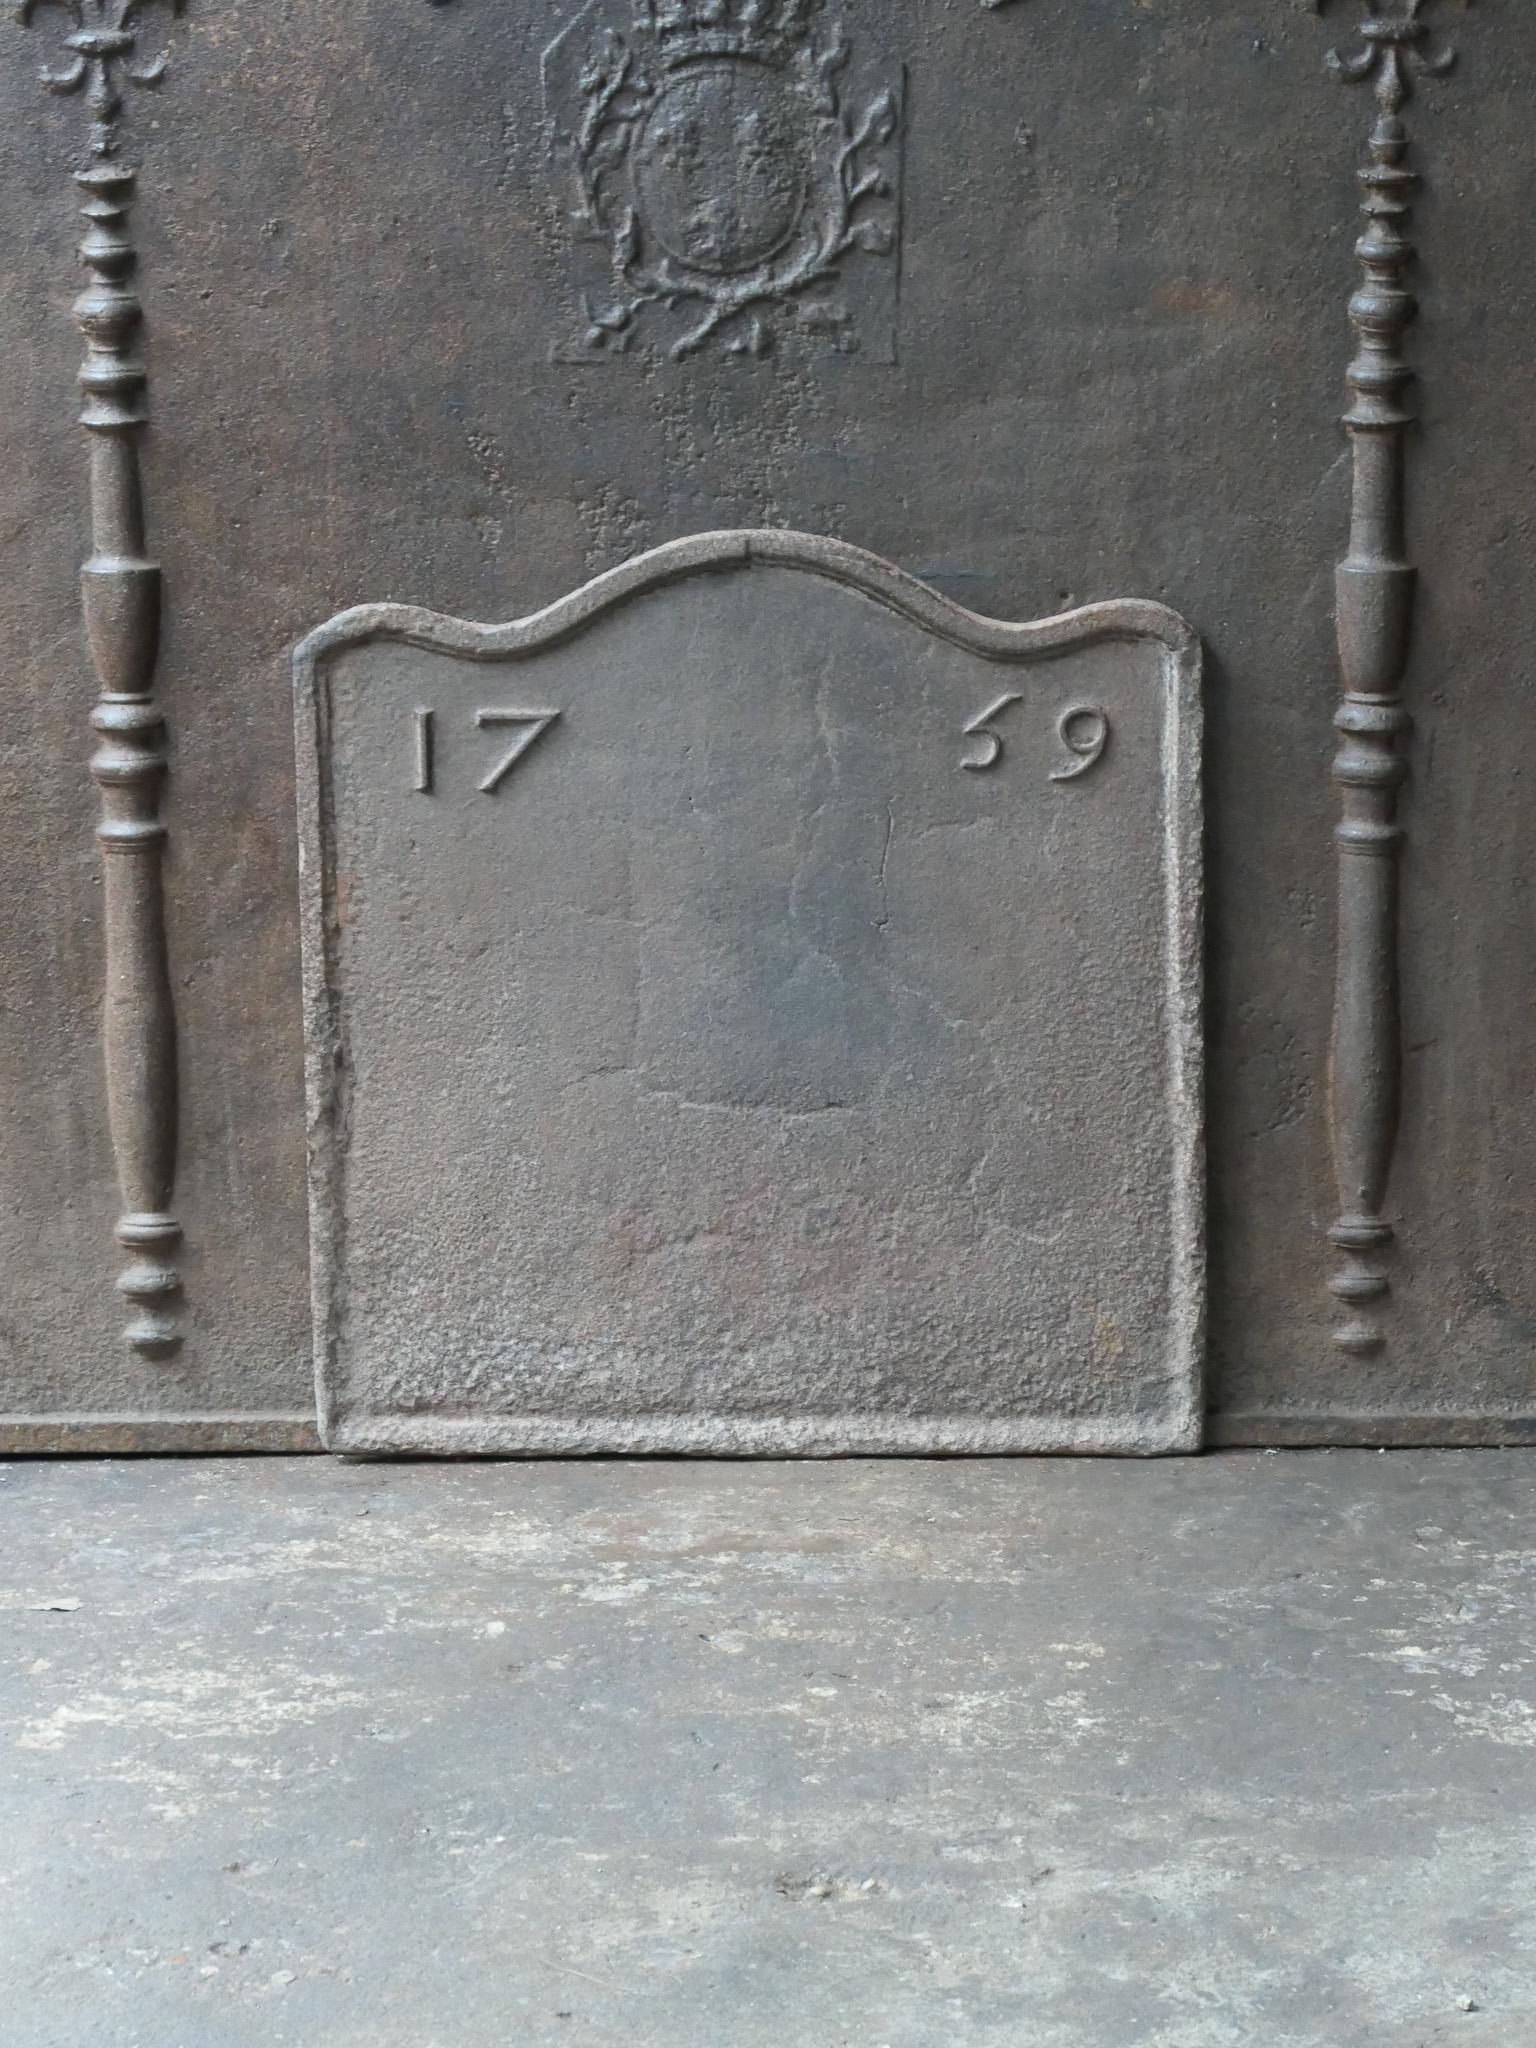 Französischer Kamin aus dem 18. Jahrhundert im Stil Louis XV. Das Herstellungsdatum 1759 ist in den Feuerboden eingegossen.

Die Feuerrückwand hat eine natürliche braune Patina. Auf Wunsch kann es ohne Aufpreis schwarz / zinnfarben hergestellt